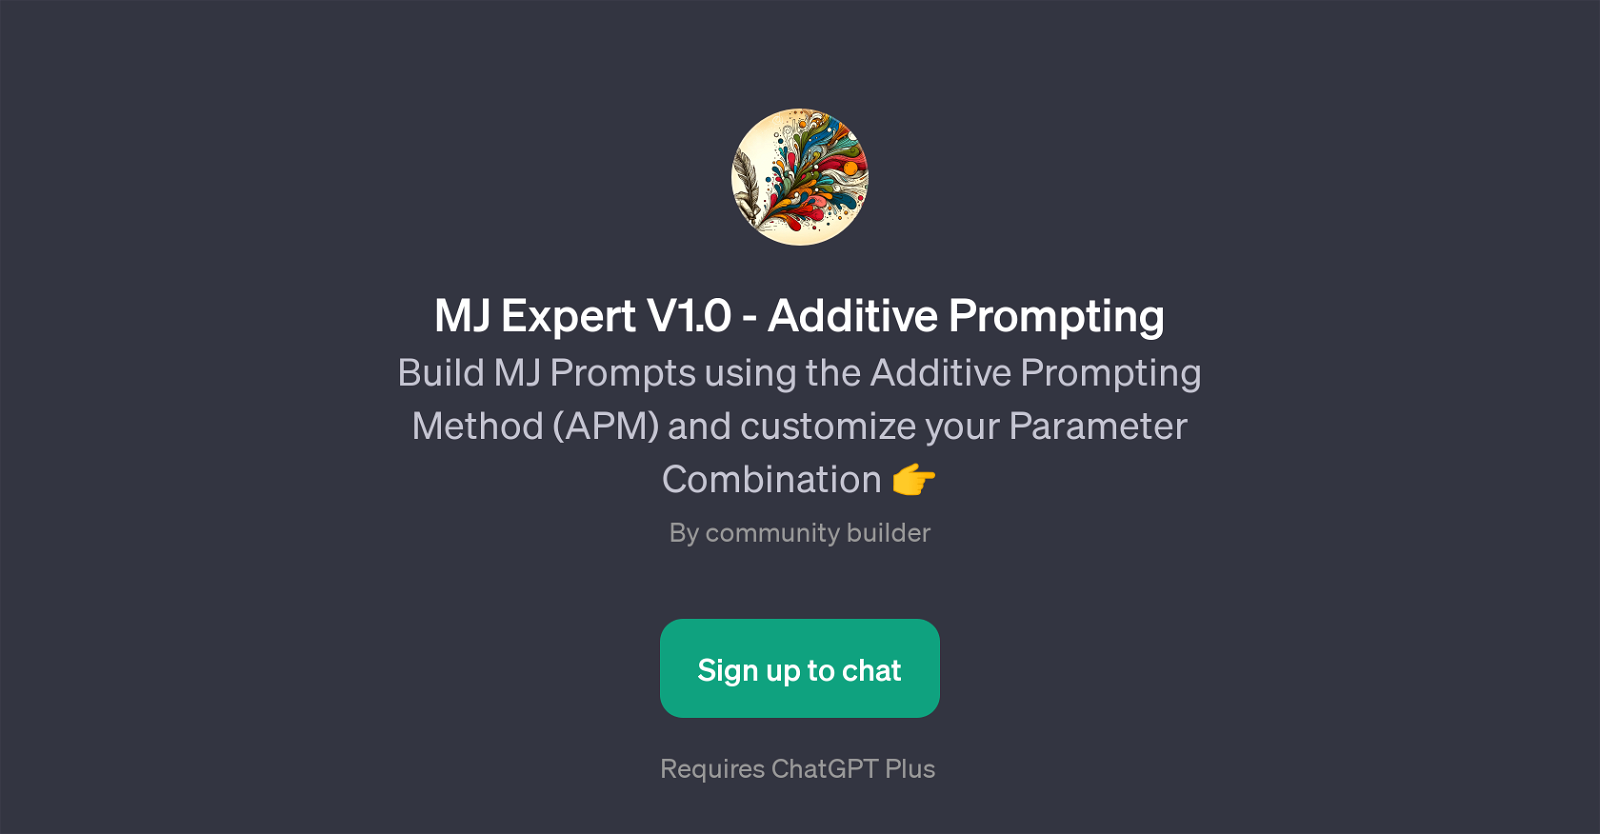 MJ Expert V1.0 - Additive Prompting website